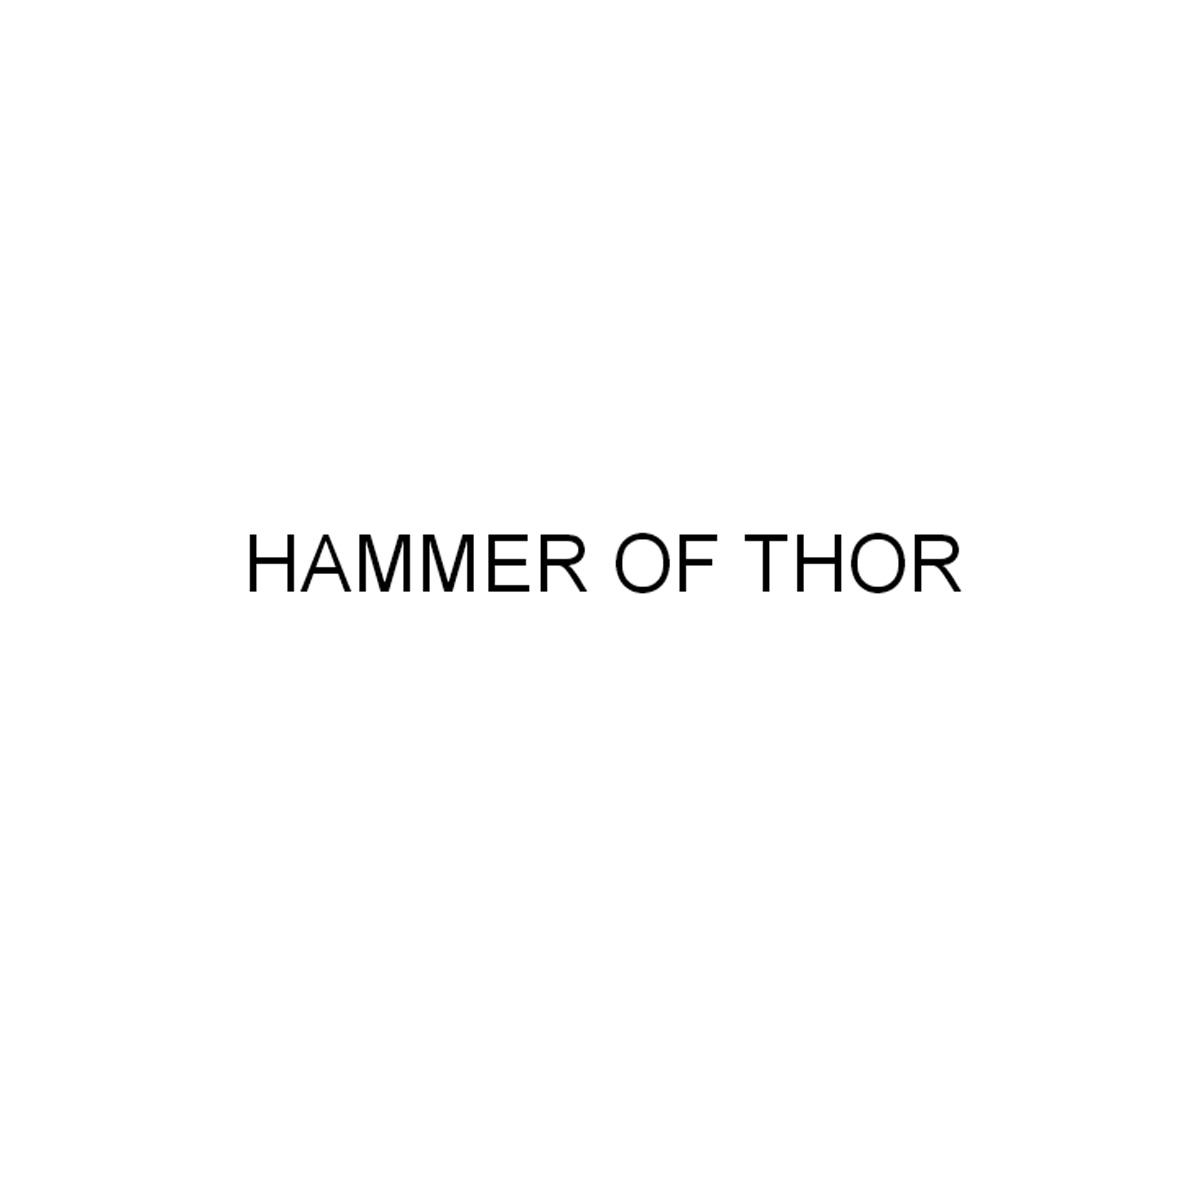  em>hammer /em> of  em>thor /em>